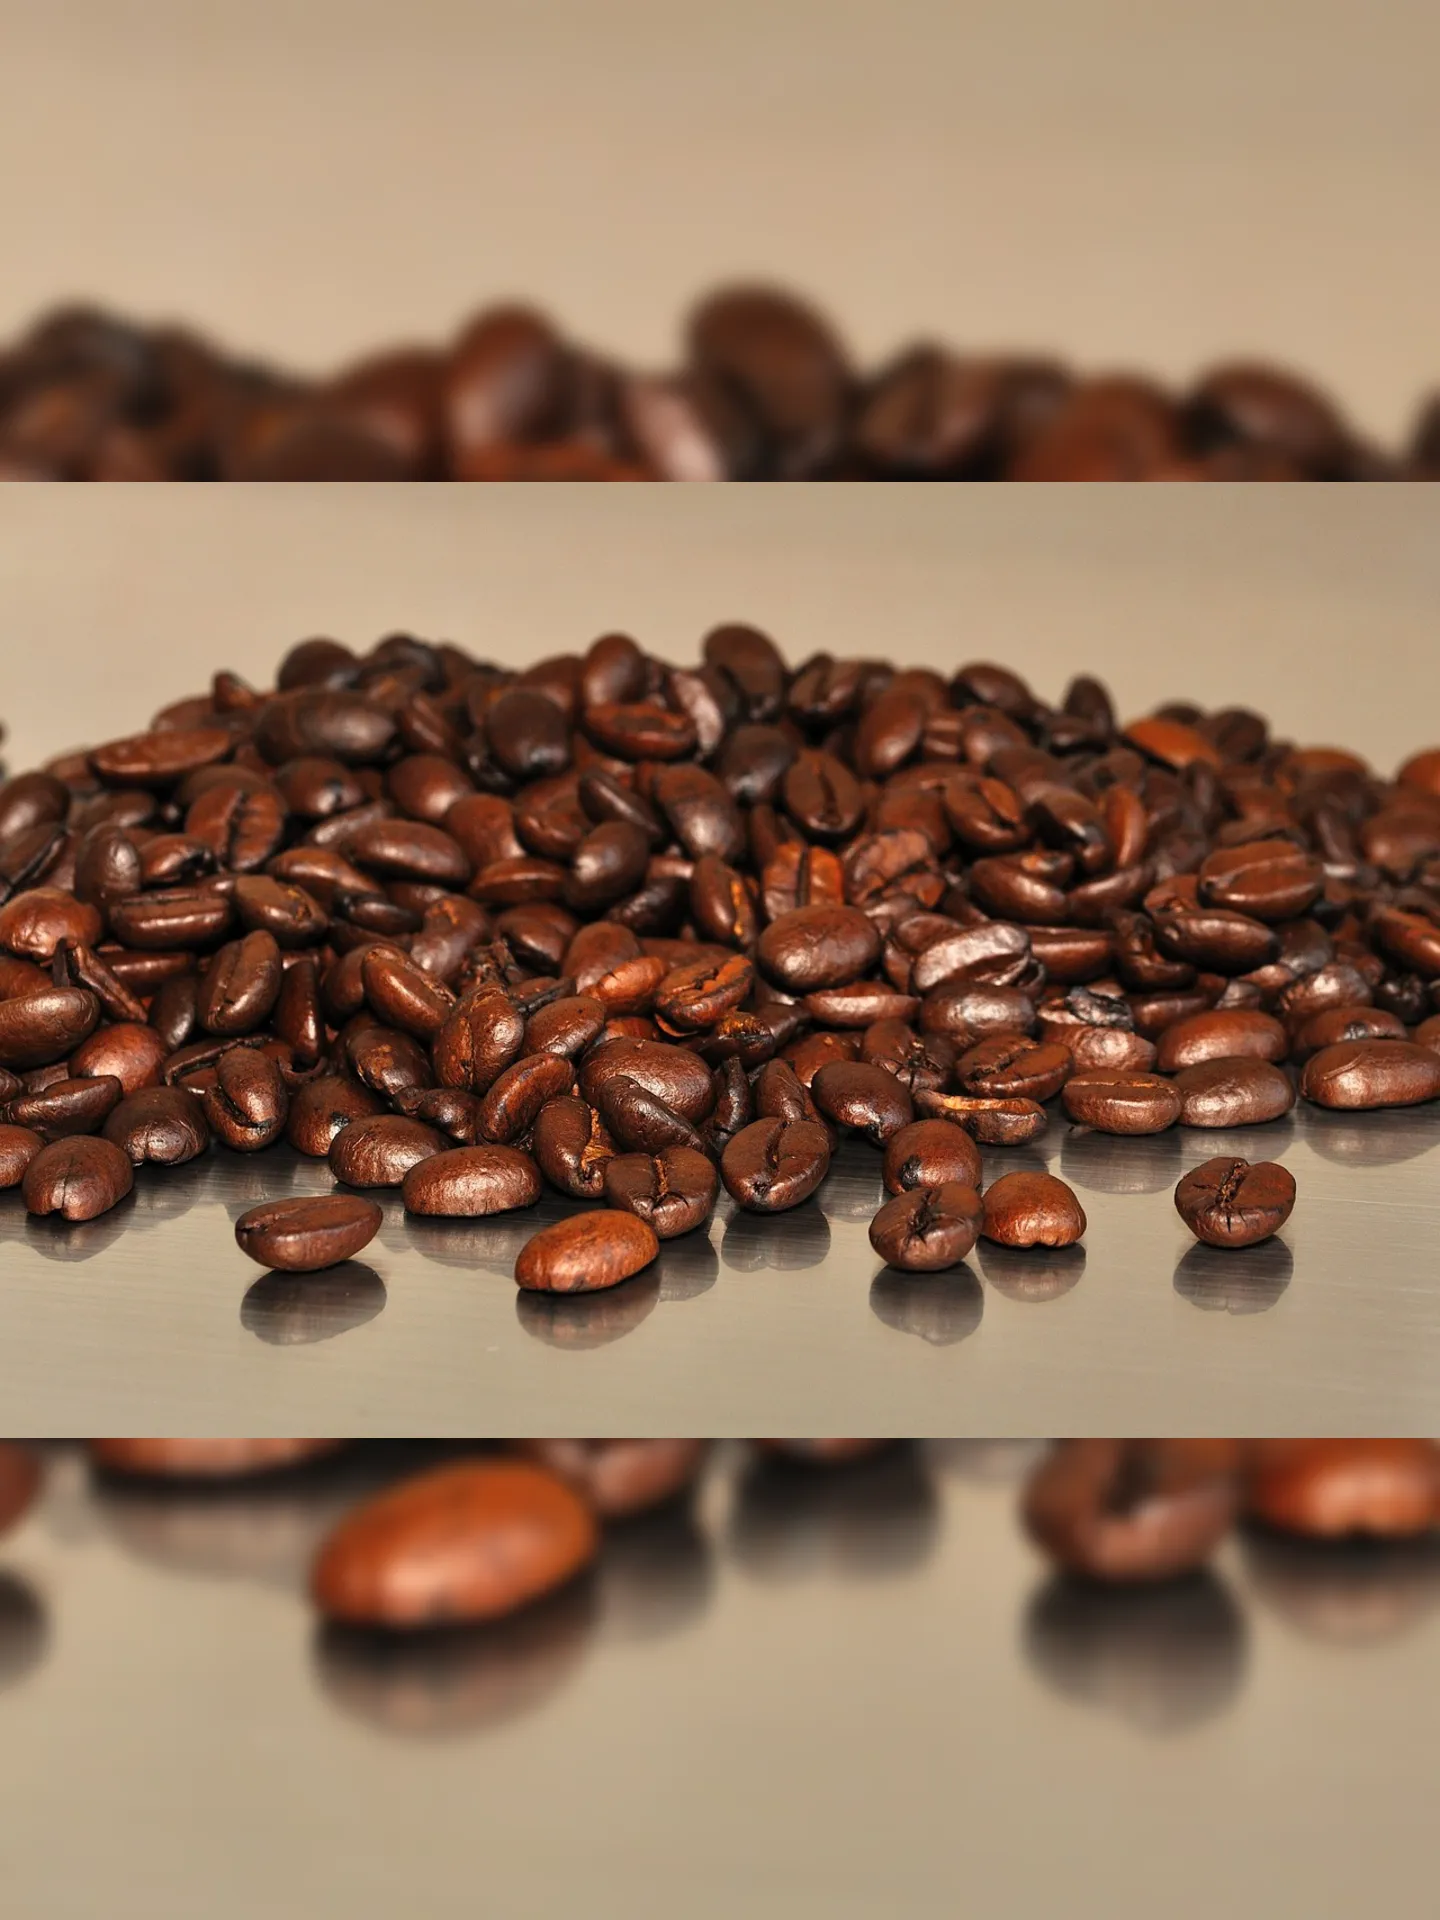 Pedaços de cascas e madeiras foram encontrados nos grãos de café